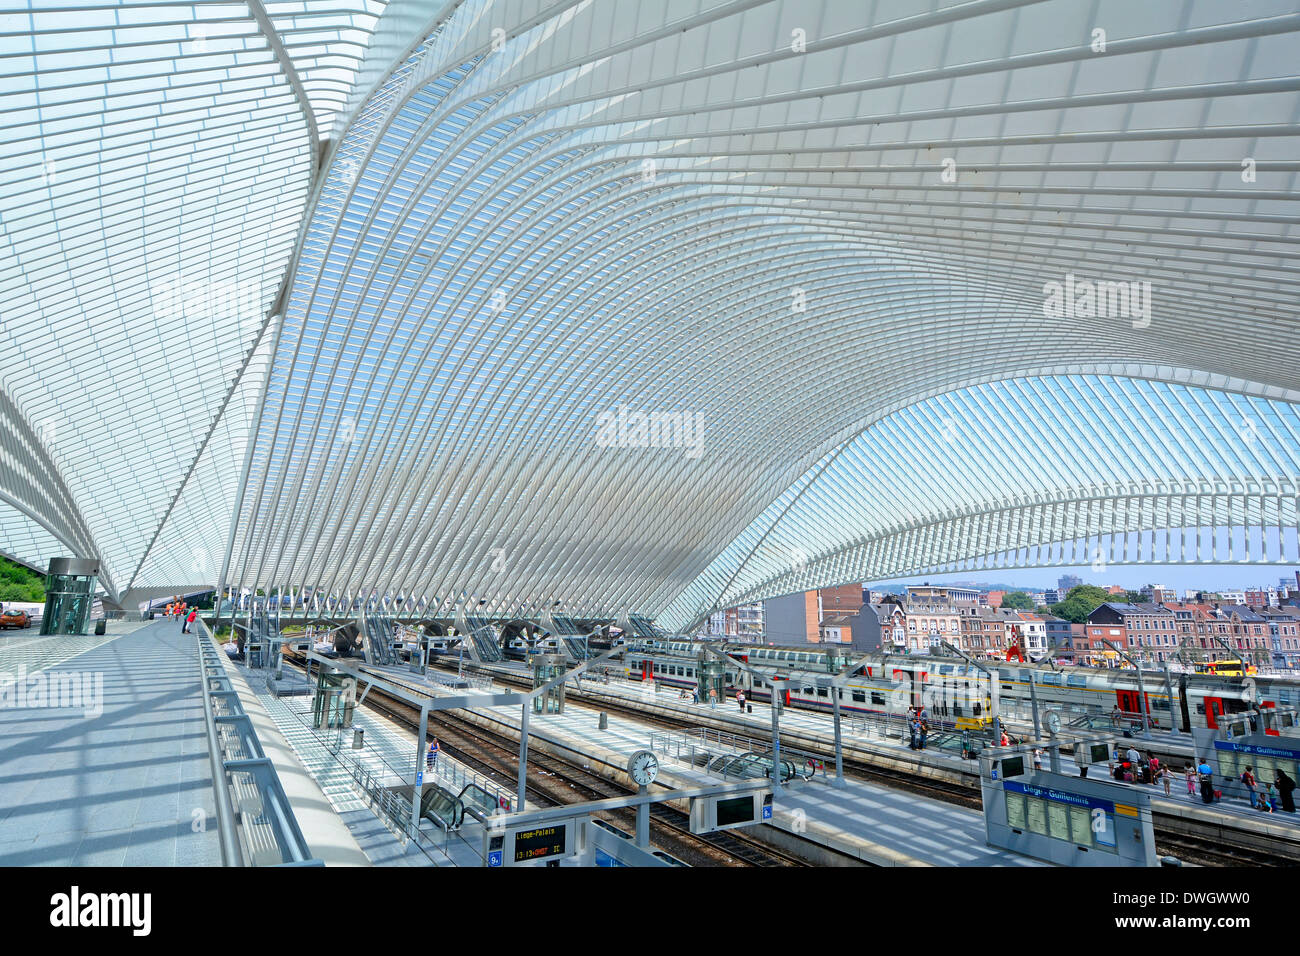 Soffitto di vetro moderne infrastrutture di trasporto pubblico la costruzione di curve per il Belgio stazione ferroviaria i binari della ferrovia e della piattaforma comune di Liegi al di là dell'UE Foto Stock